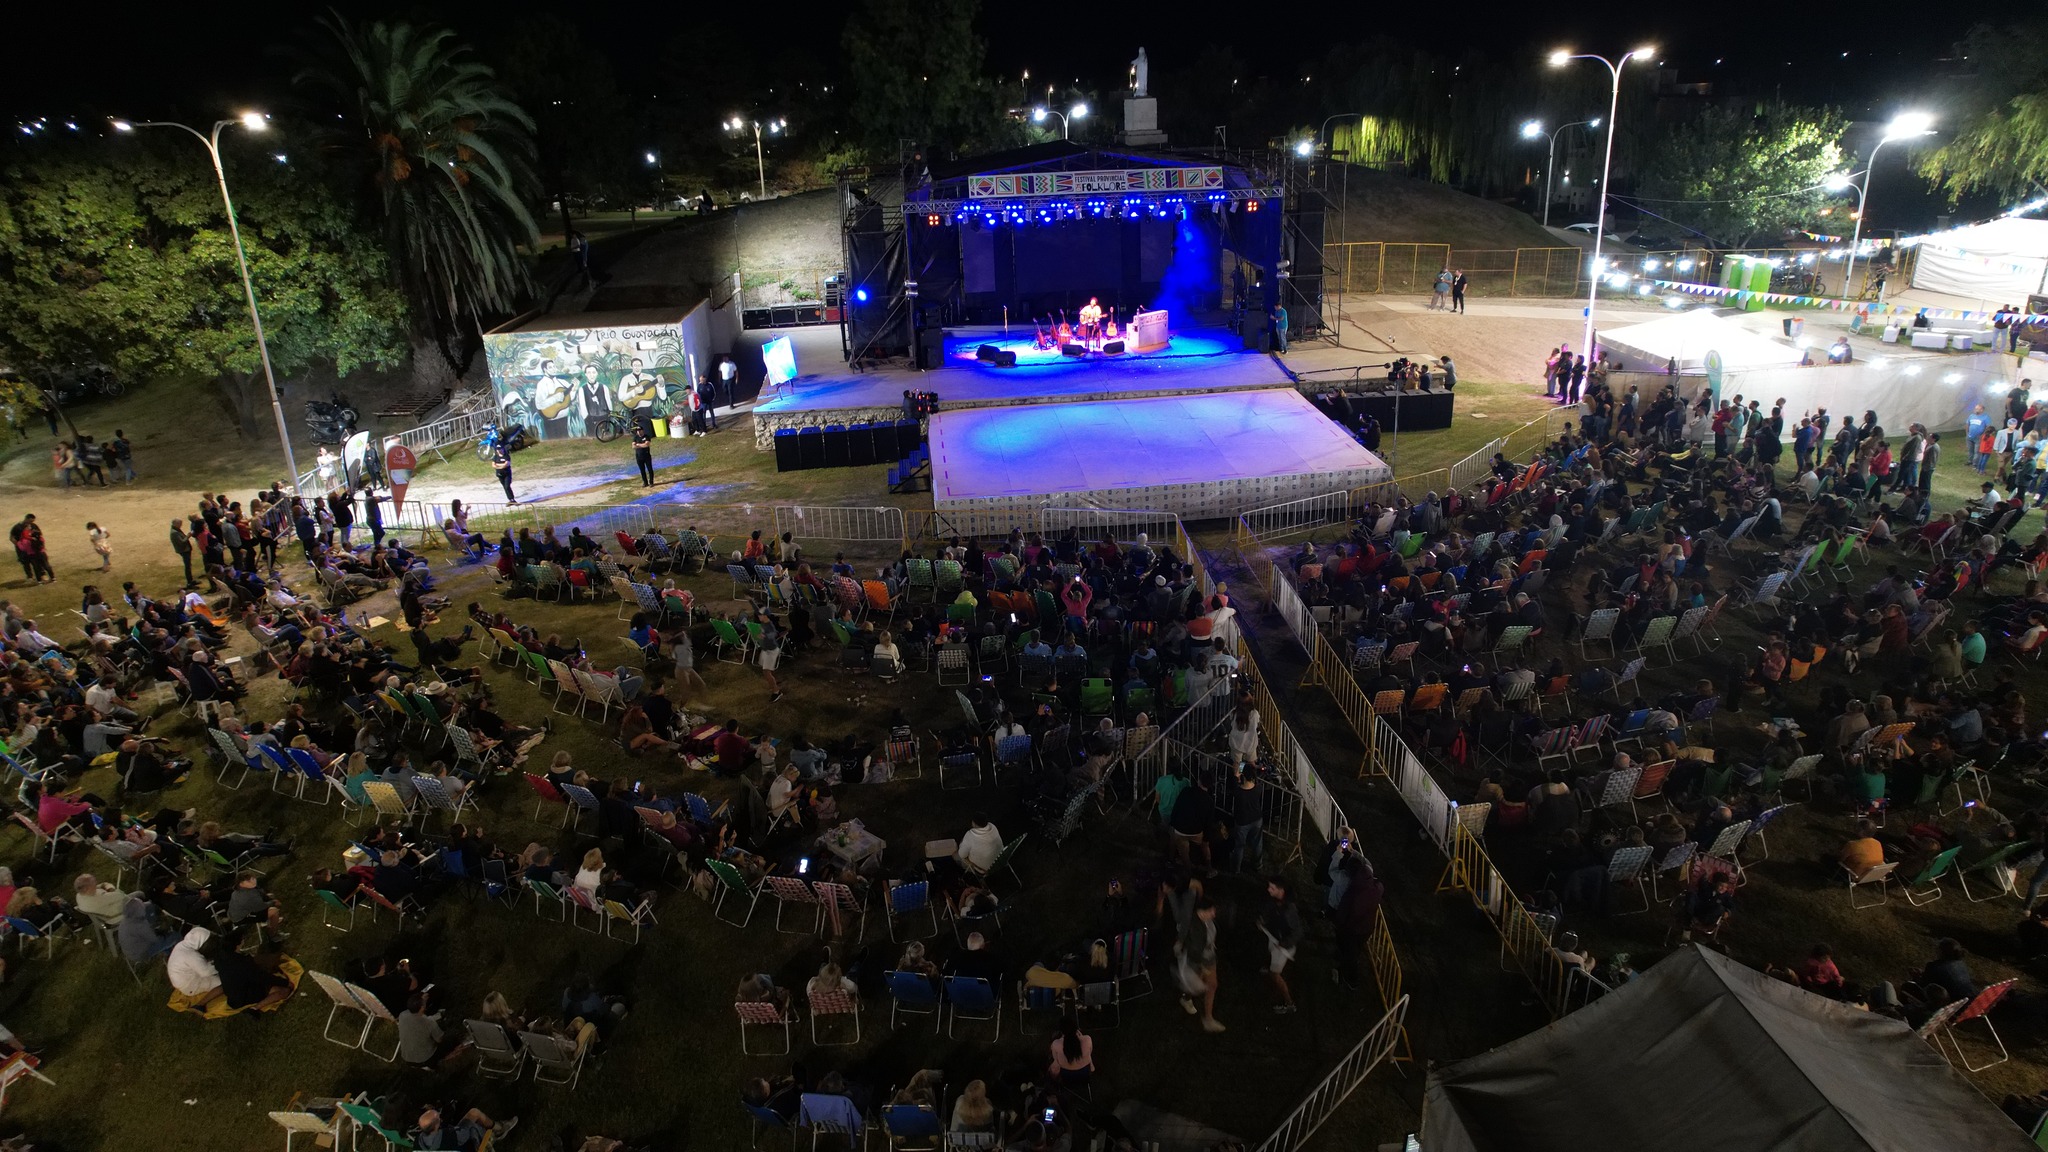 Festival provincial de folclore: Más de 250 artistas locales y regionales brillaron en el escenario Trío Guayacán, cautivando a un gran marco de público que disfrutó de ambas jornadas